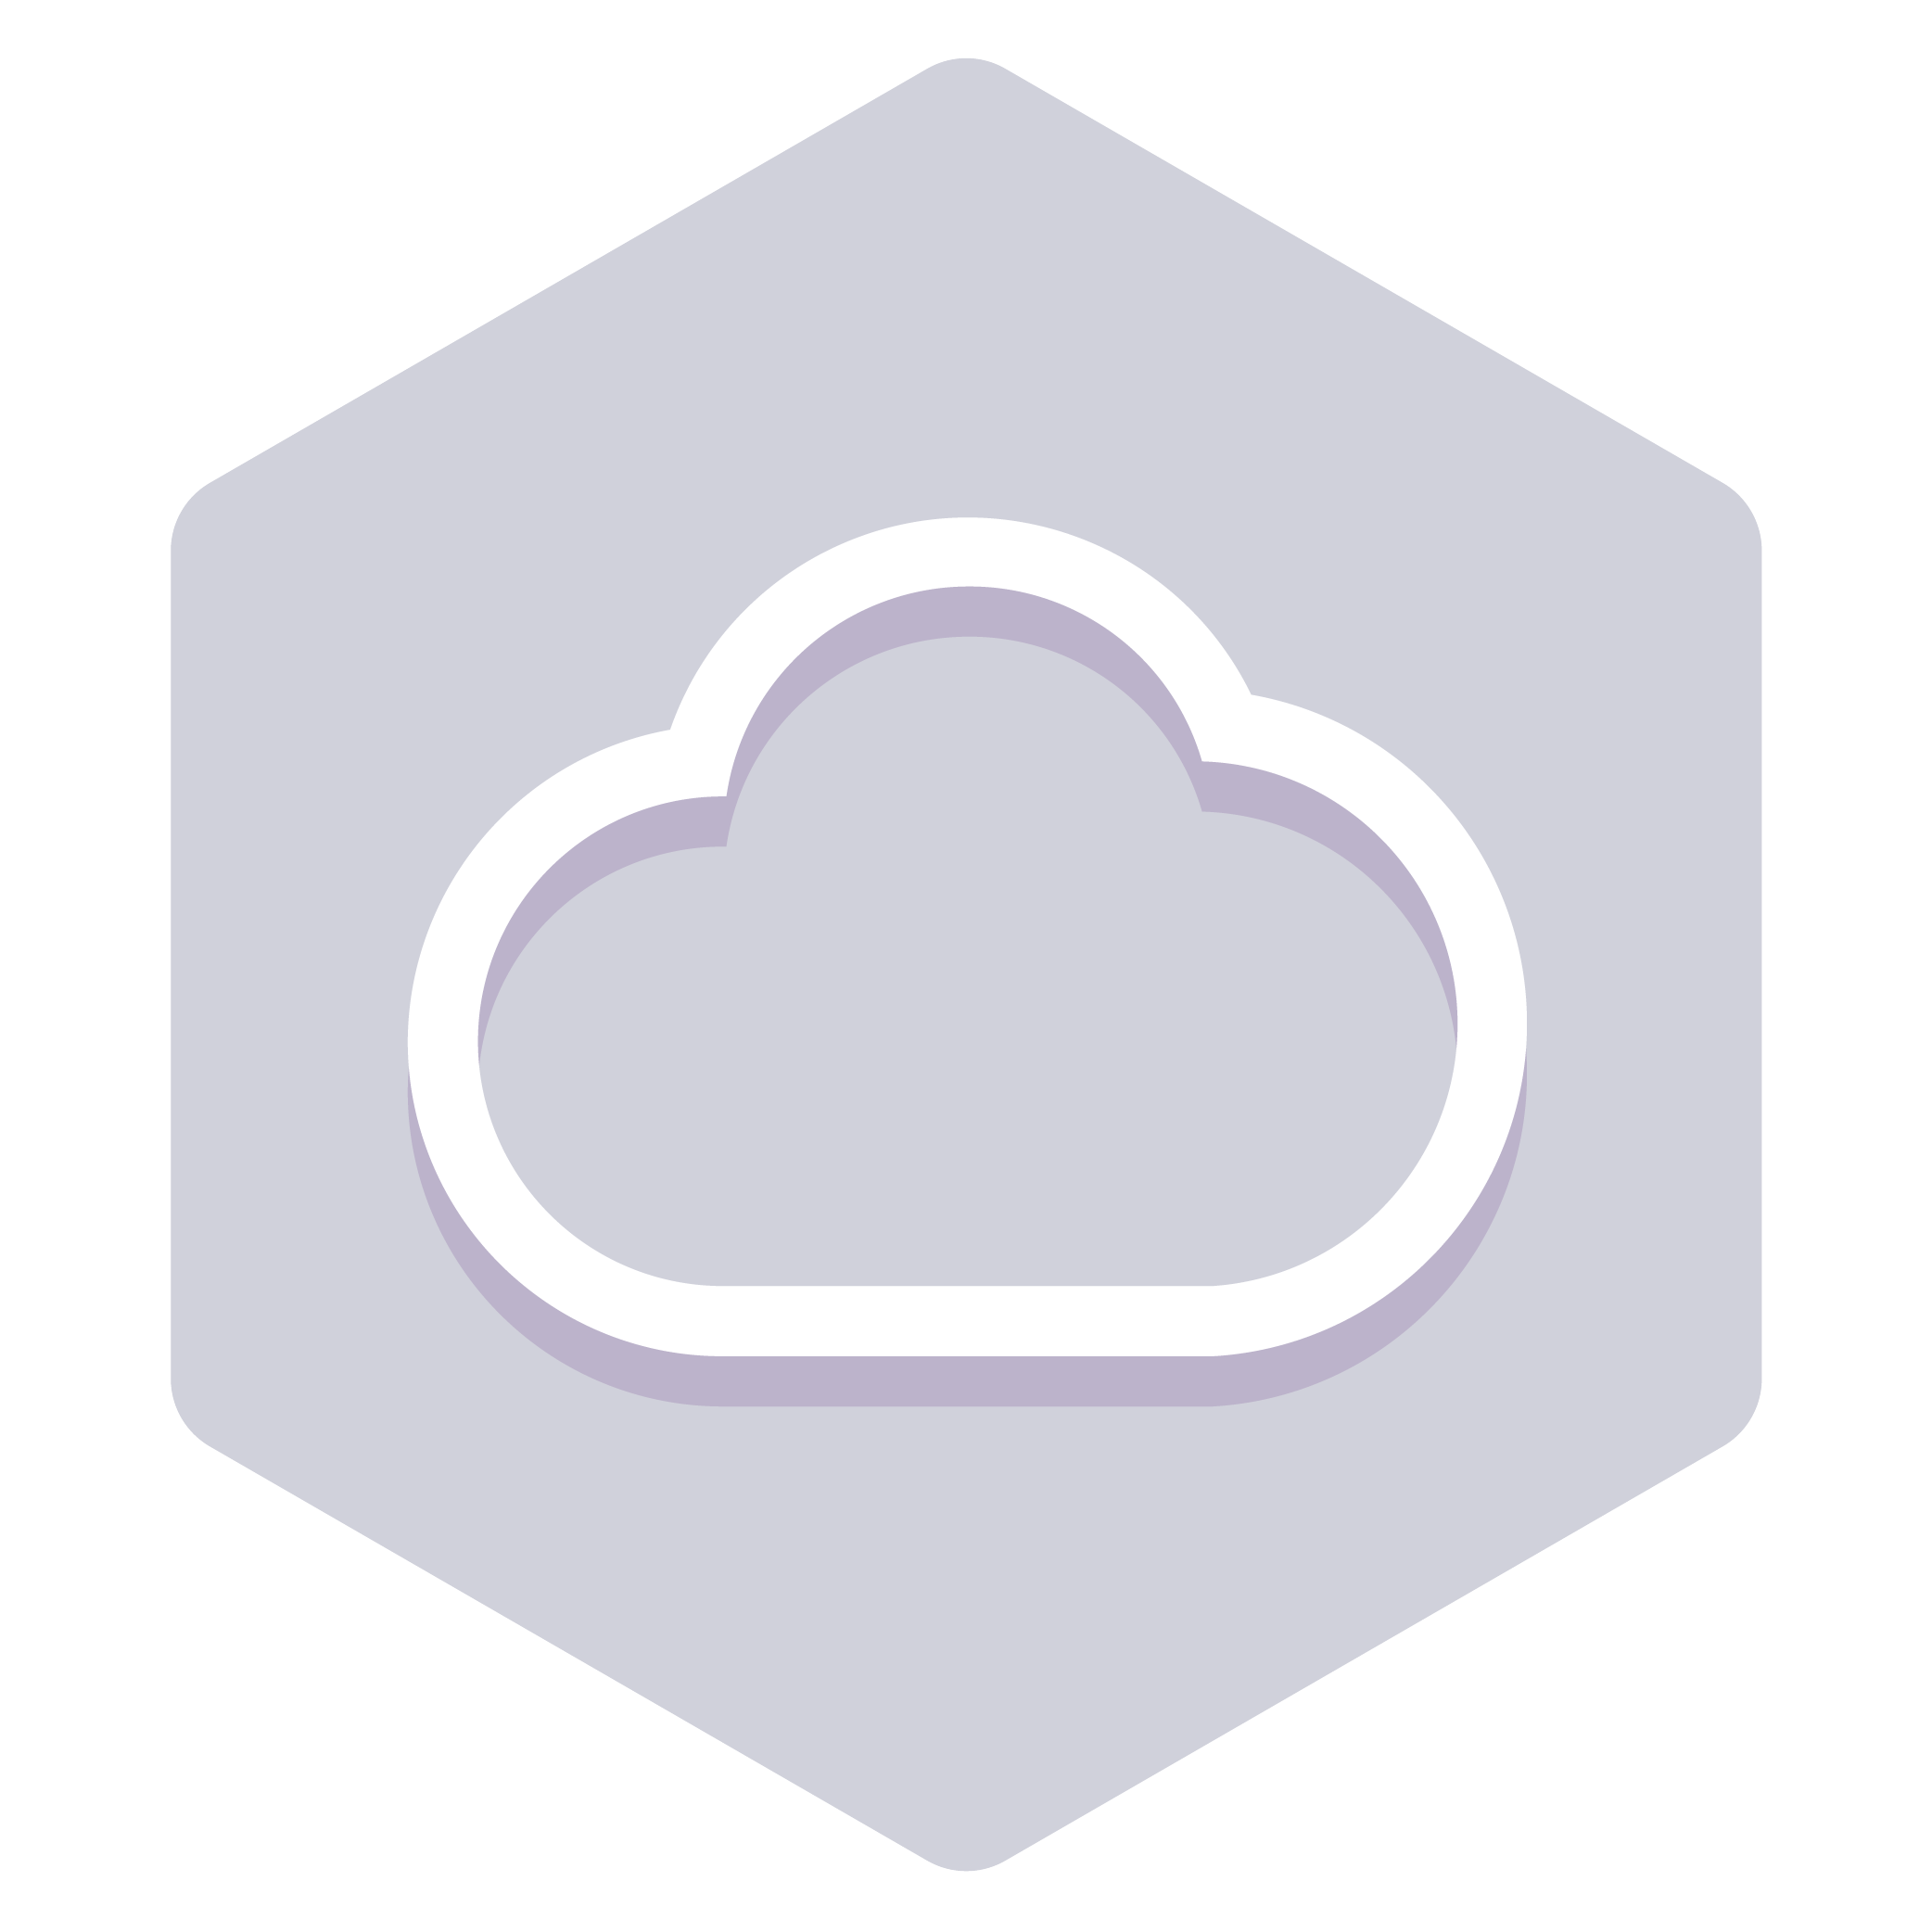 mission badge: Pega Cloud Services Essentials